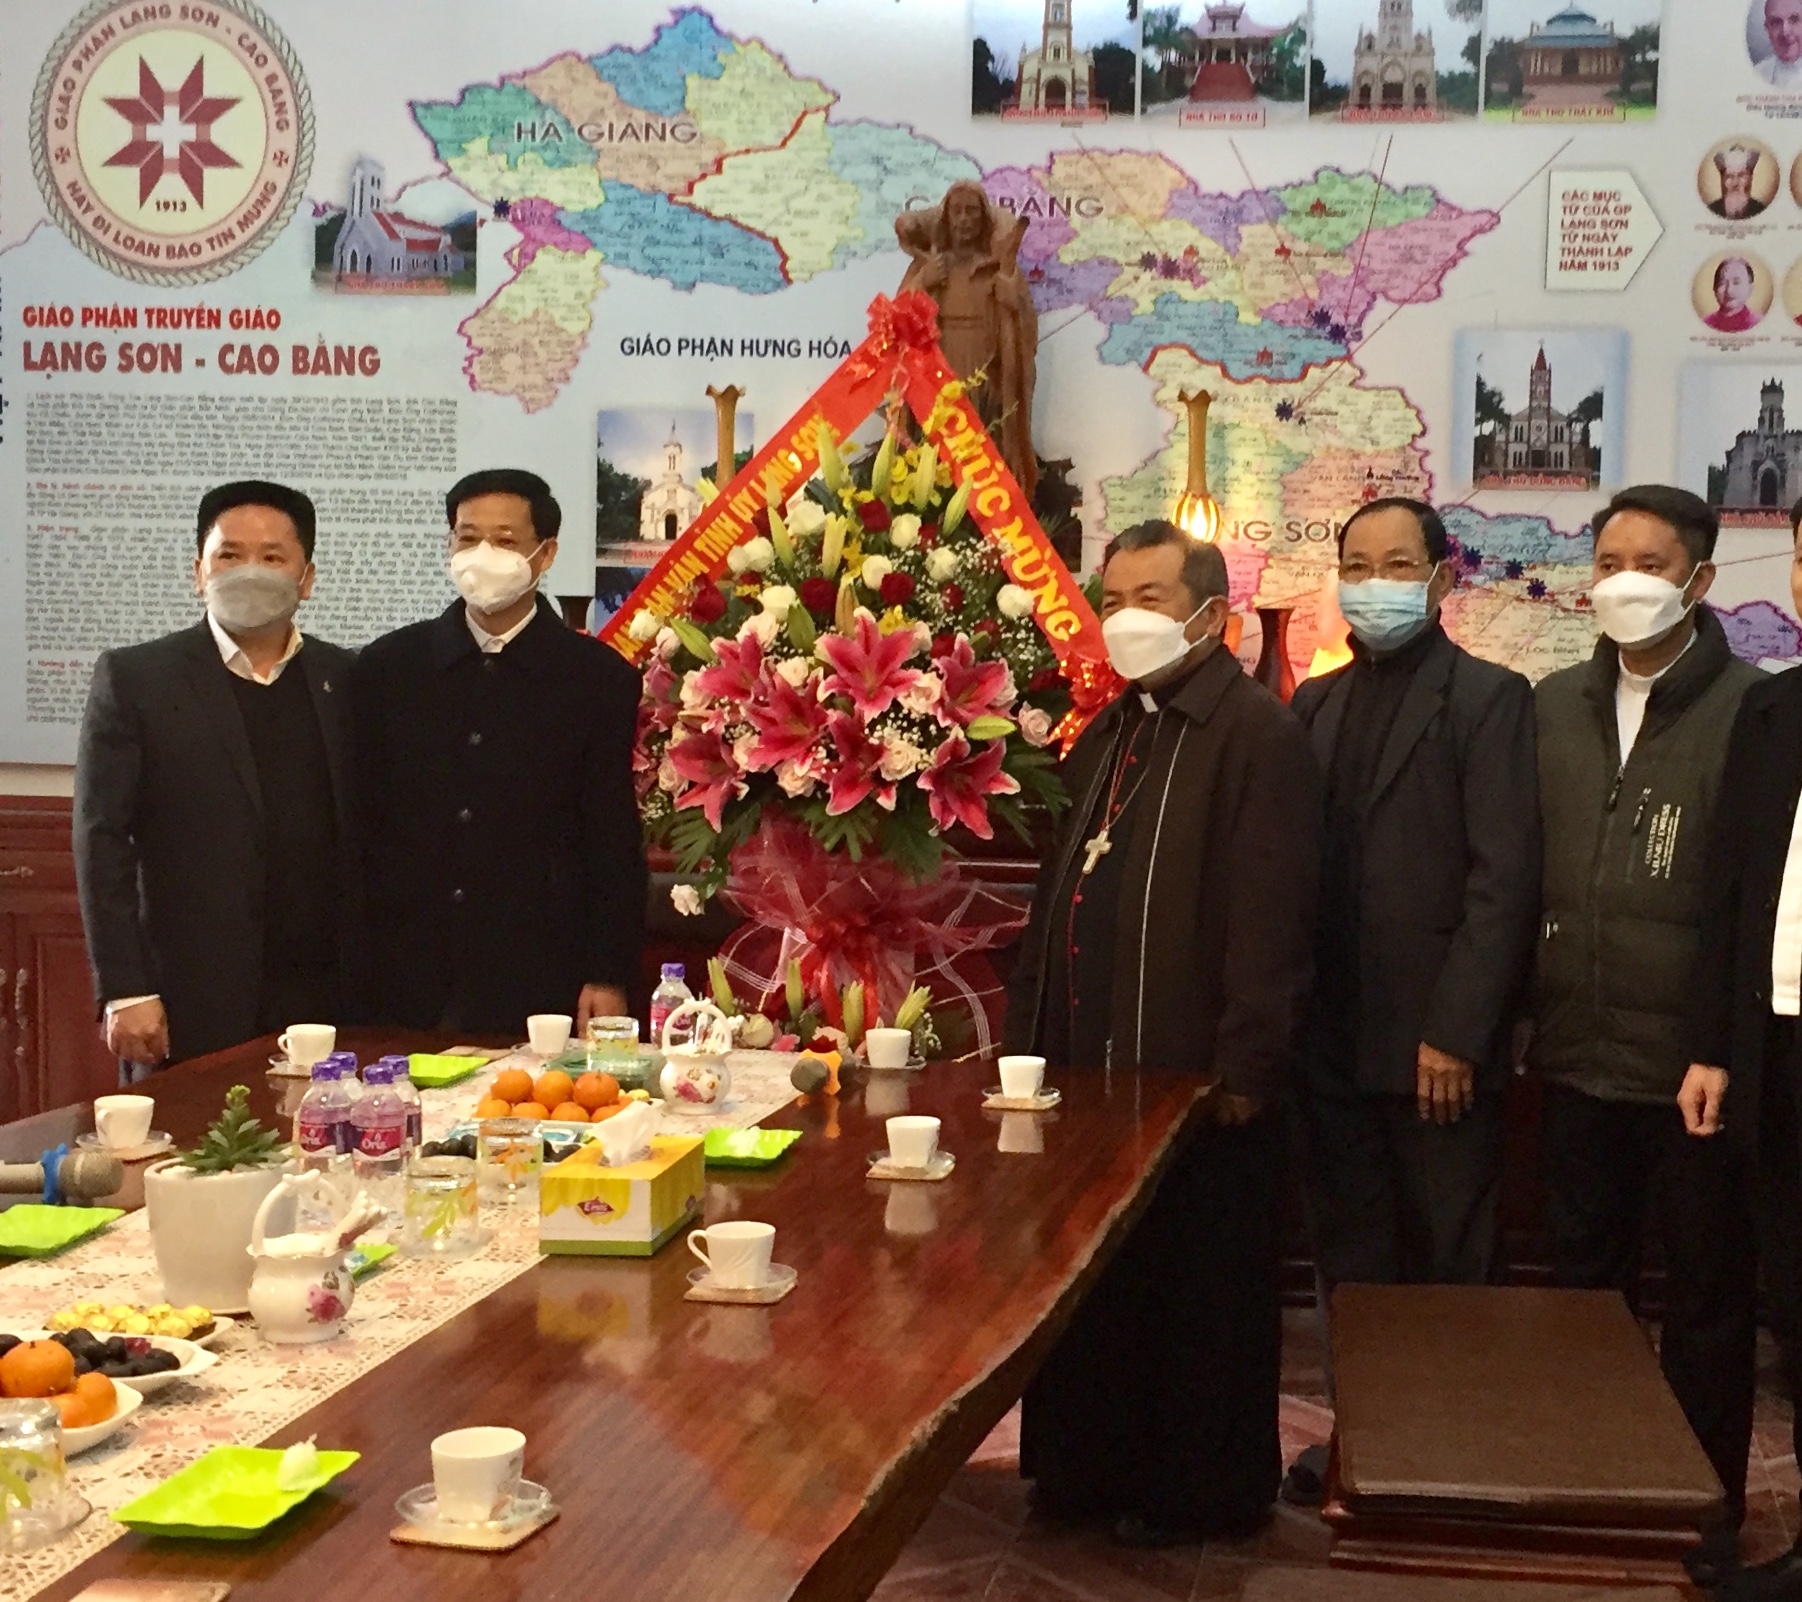 Đoàn chúc mừng tại Toà Giám mục Lạng Sơn - Cao Bằng